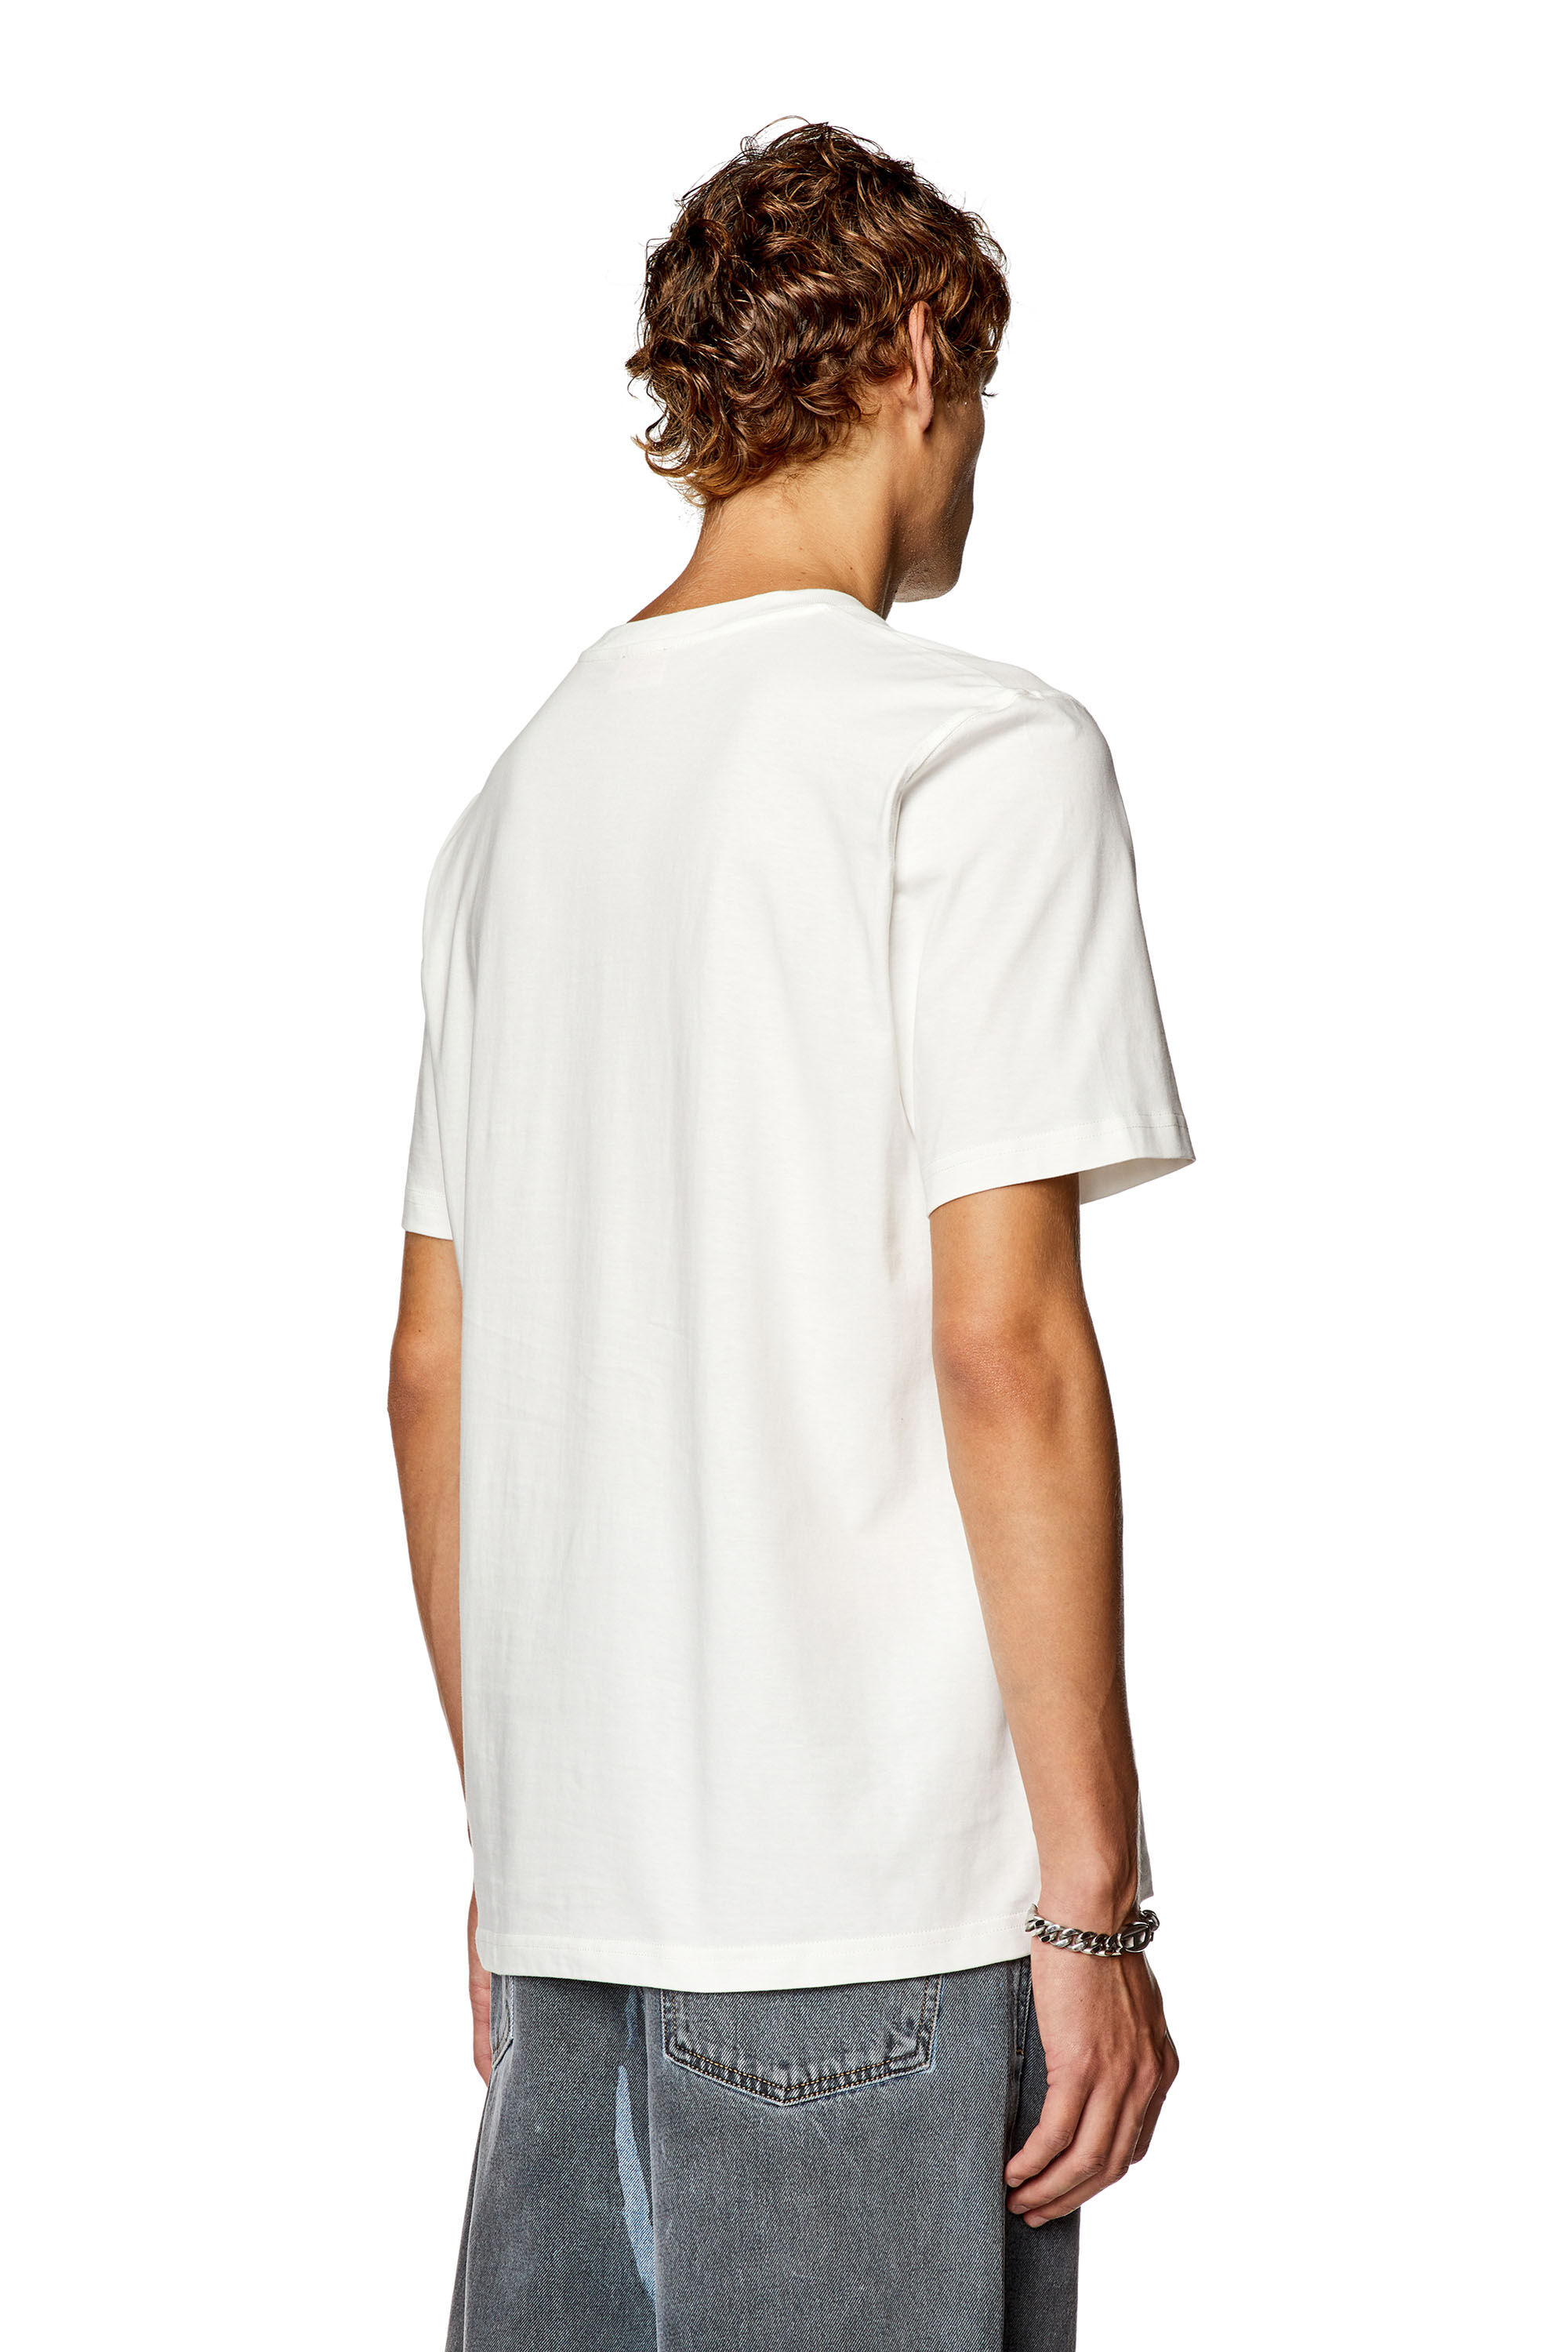 Diesel - T-JUST-N18, Man T-shirt with Diesel bag print in White - Image 4